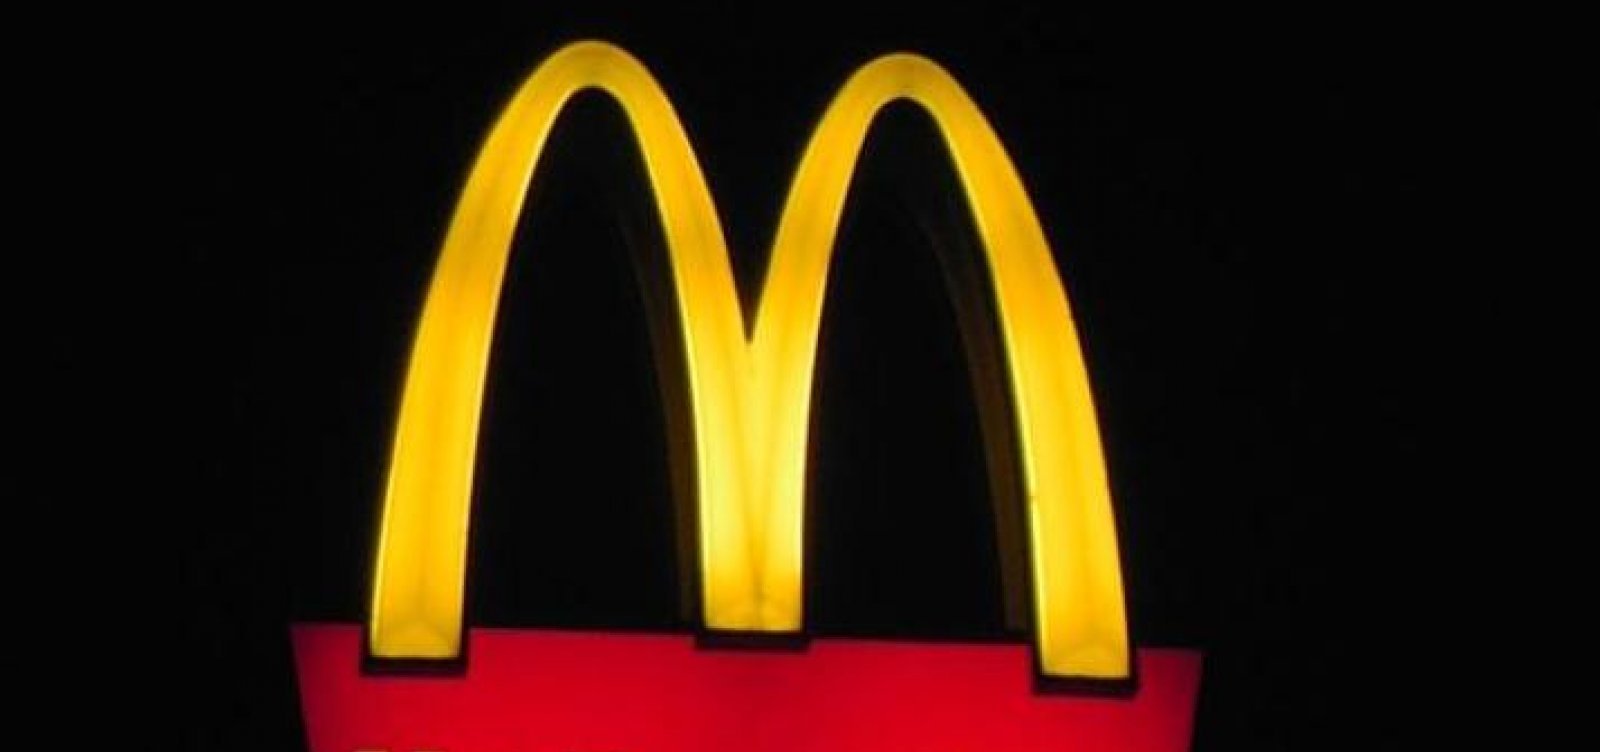 McDonald's anuncia saída definitiva de todas as lojas da rede na Rússia